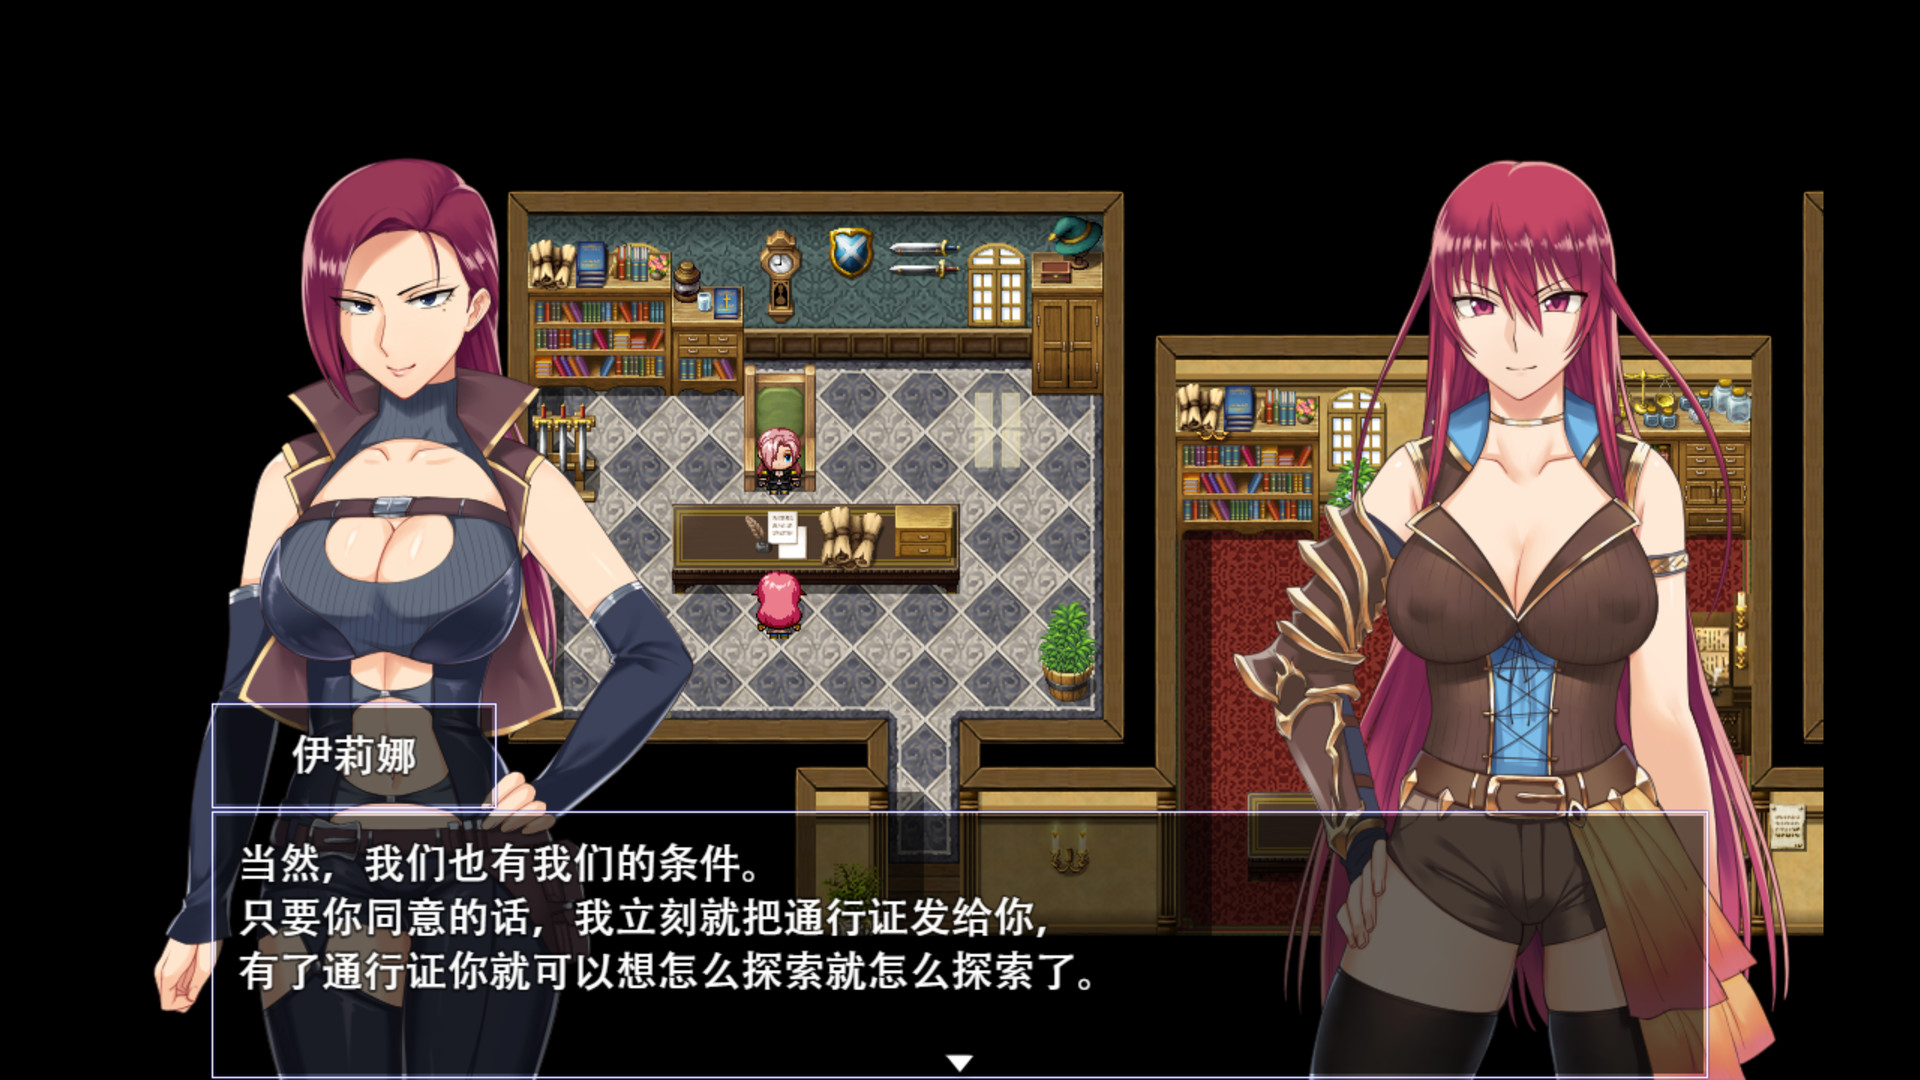 【RPG/中文】堕落少女:焰发的玛琪娜和遗迹之城 v1.0d Steam官方中文版【PC+安卓+存档/2.1G】